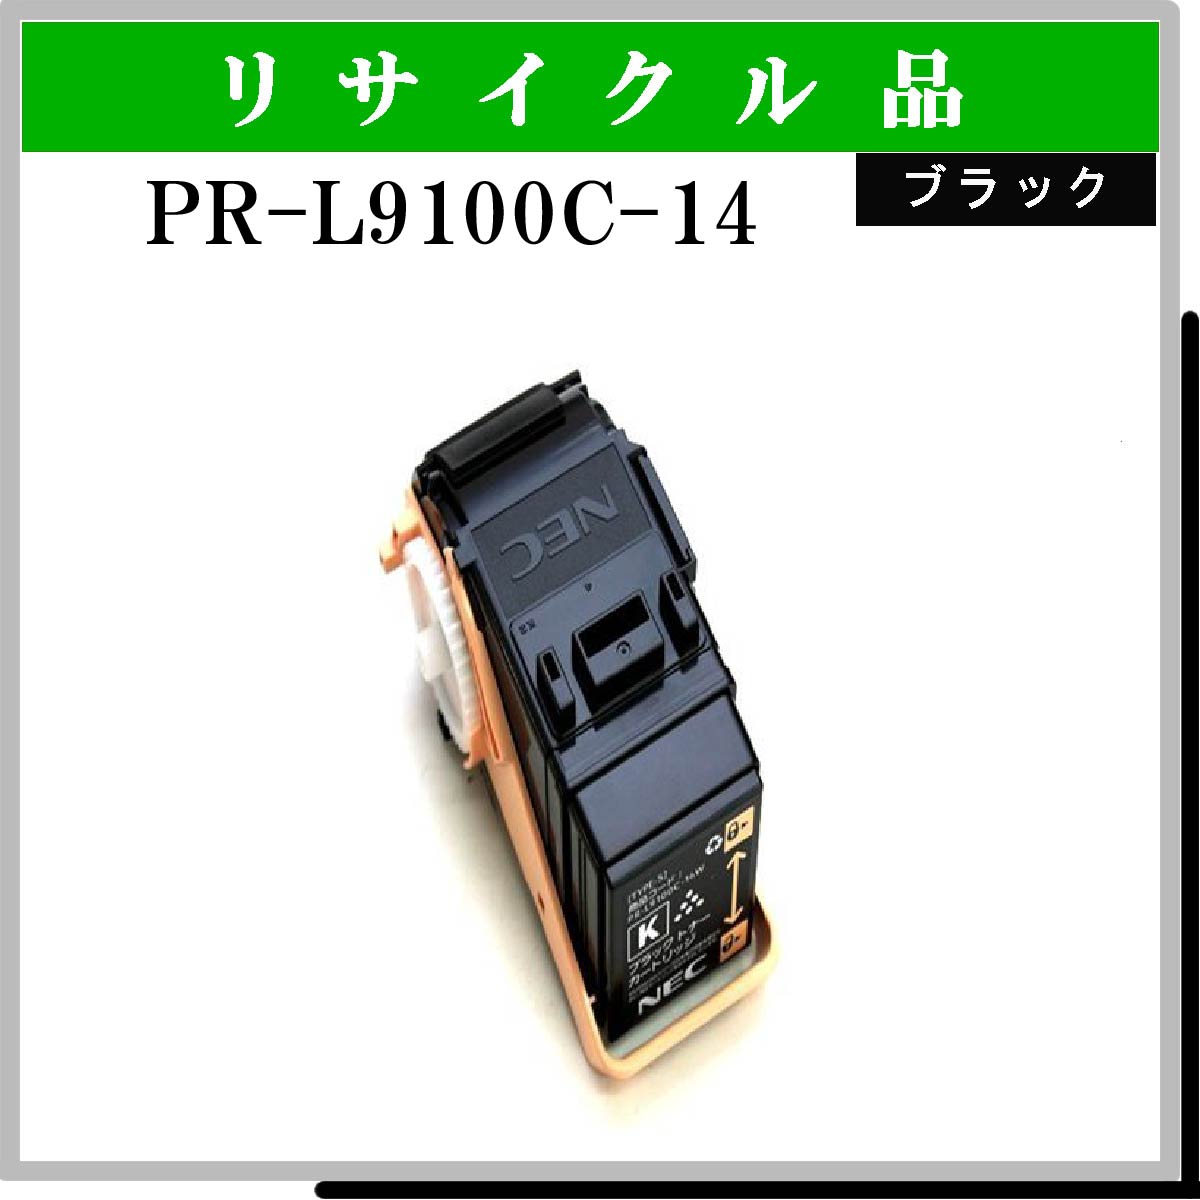 PR-L9100C-14